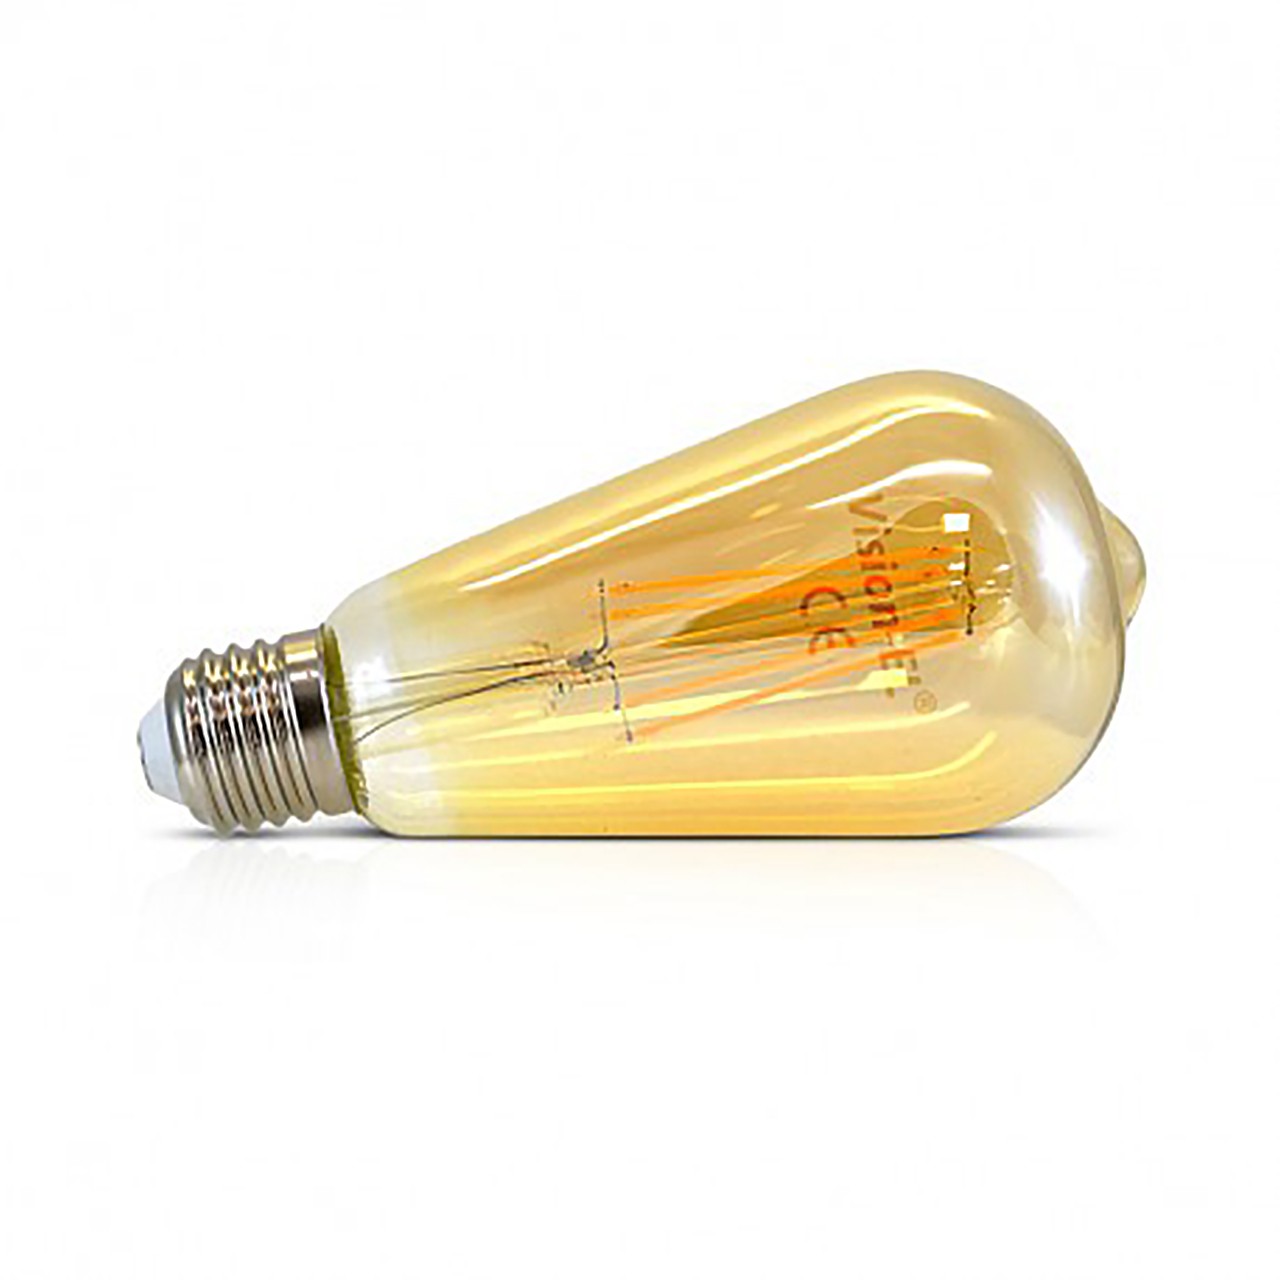 Ampoule filament LED, E27